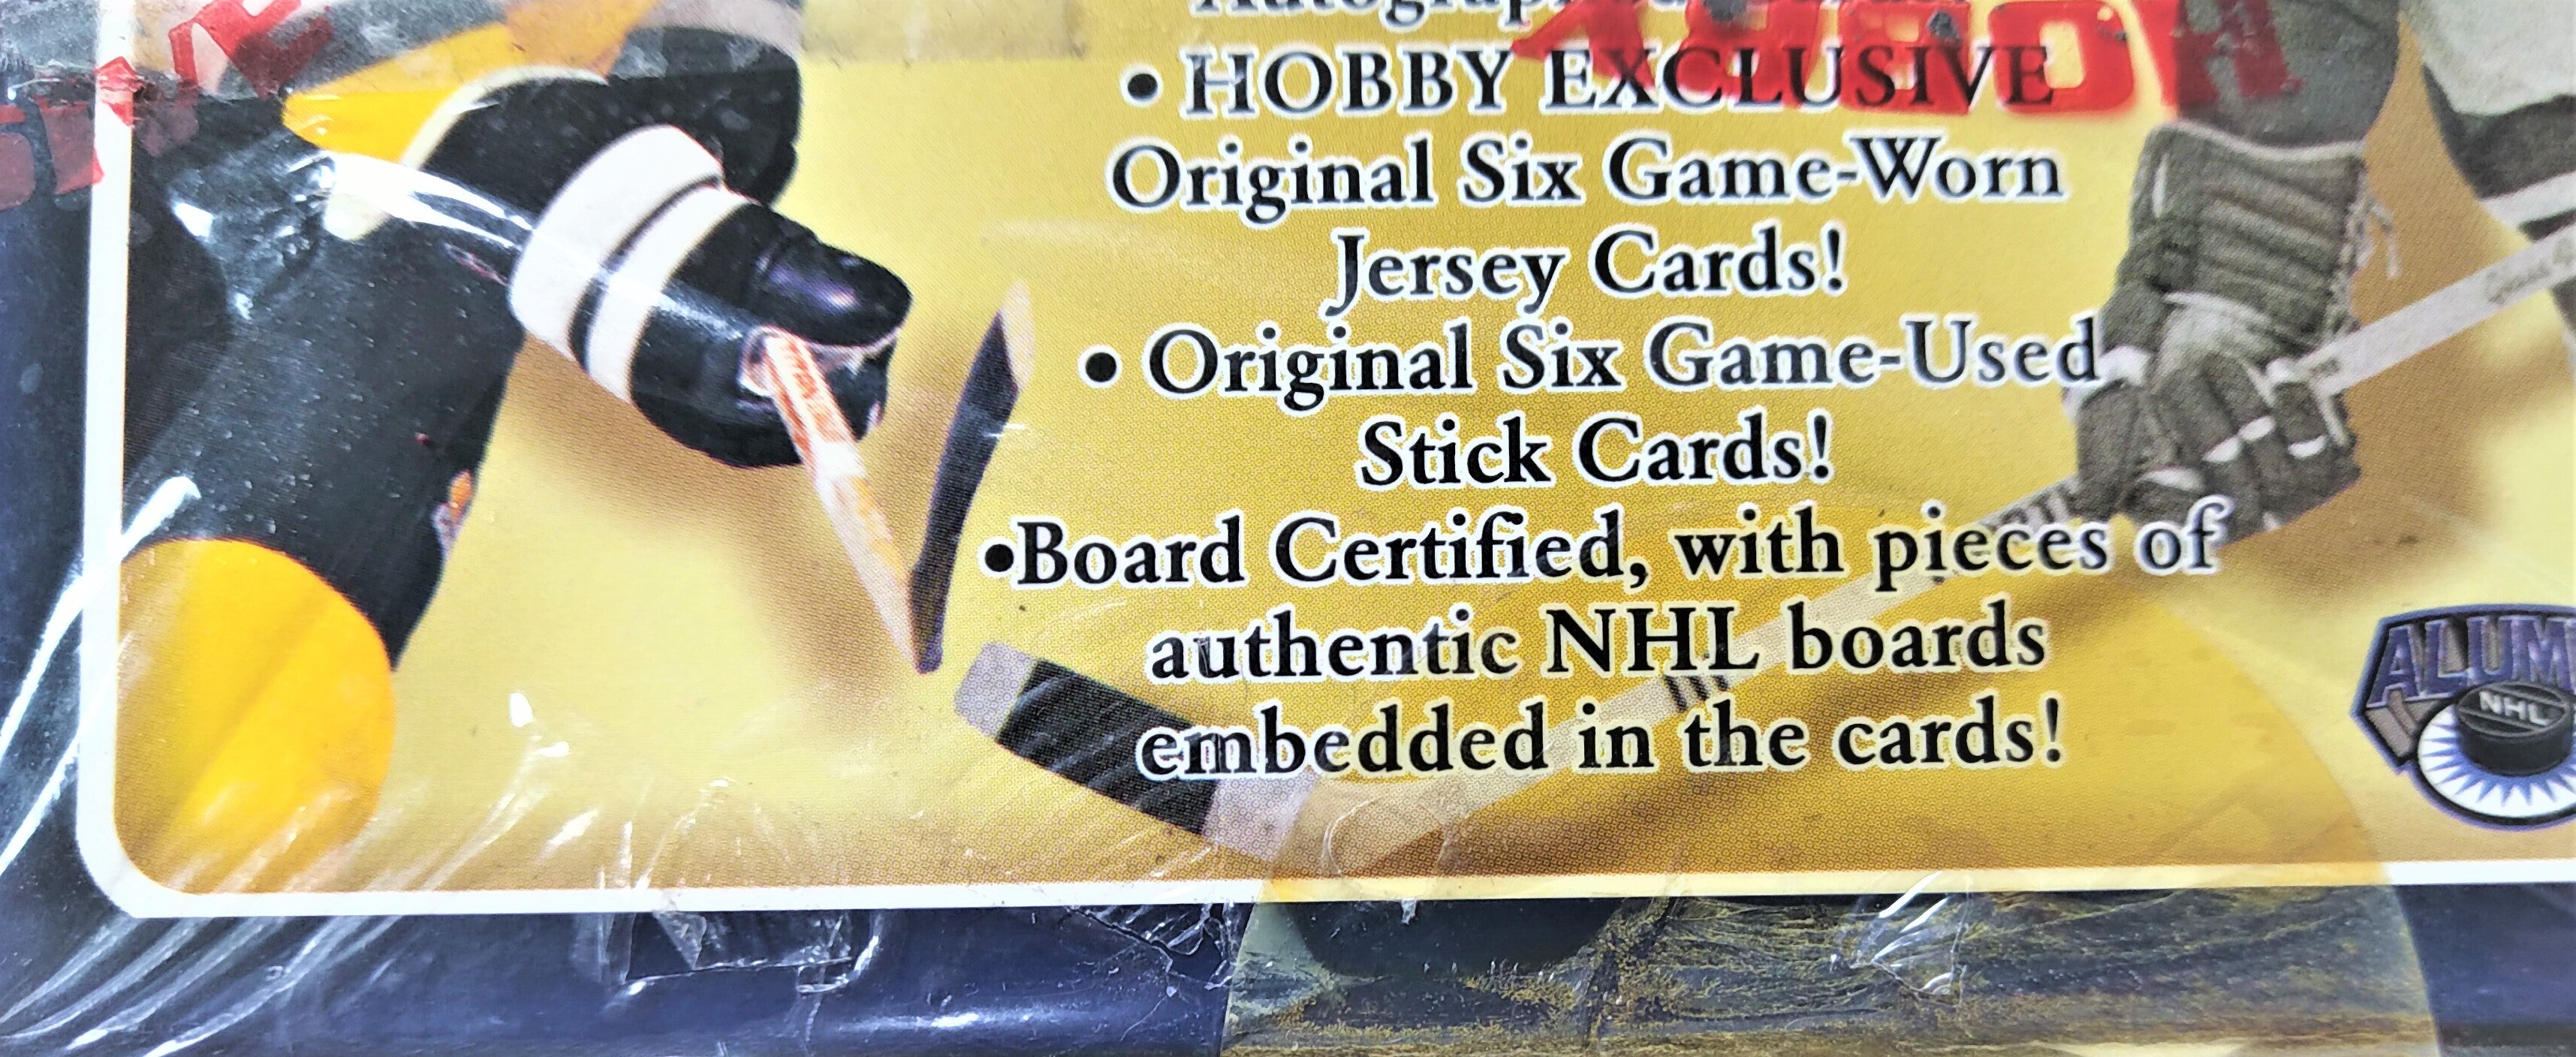 2001-02 Fleer Greats Of The Game Hockey Hobby Box - Miraj Trading